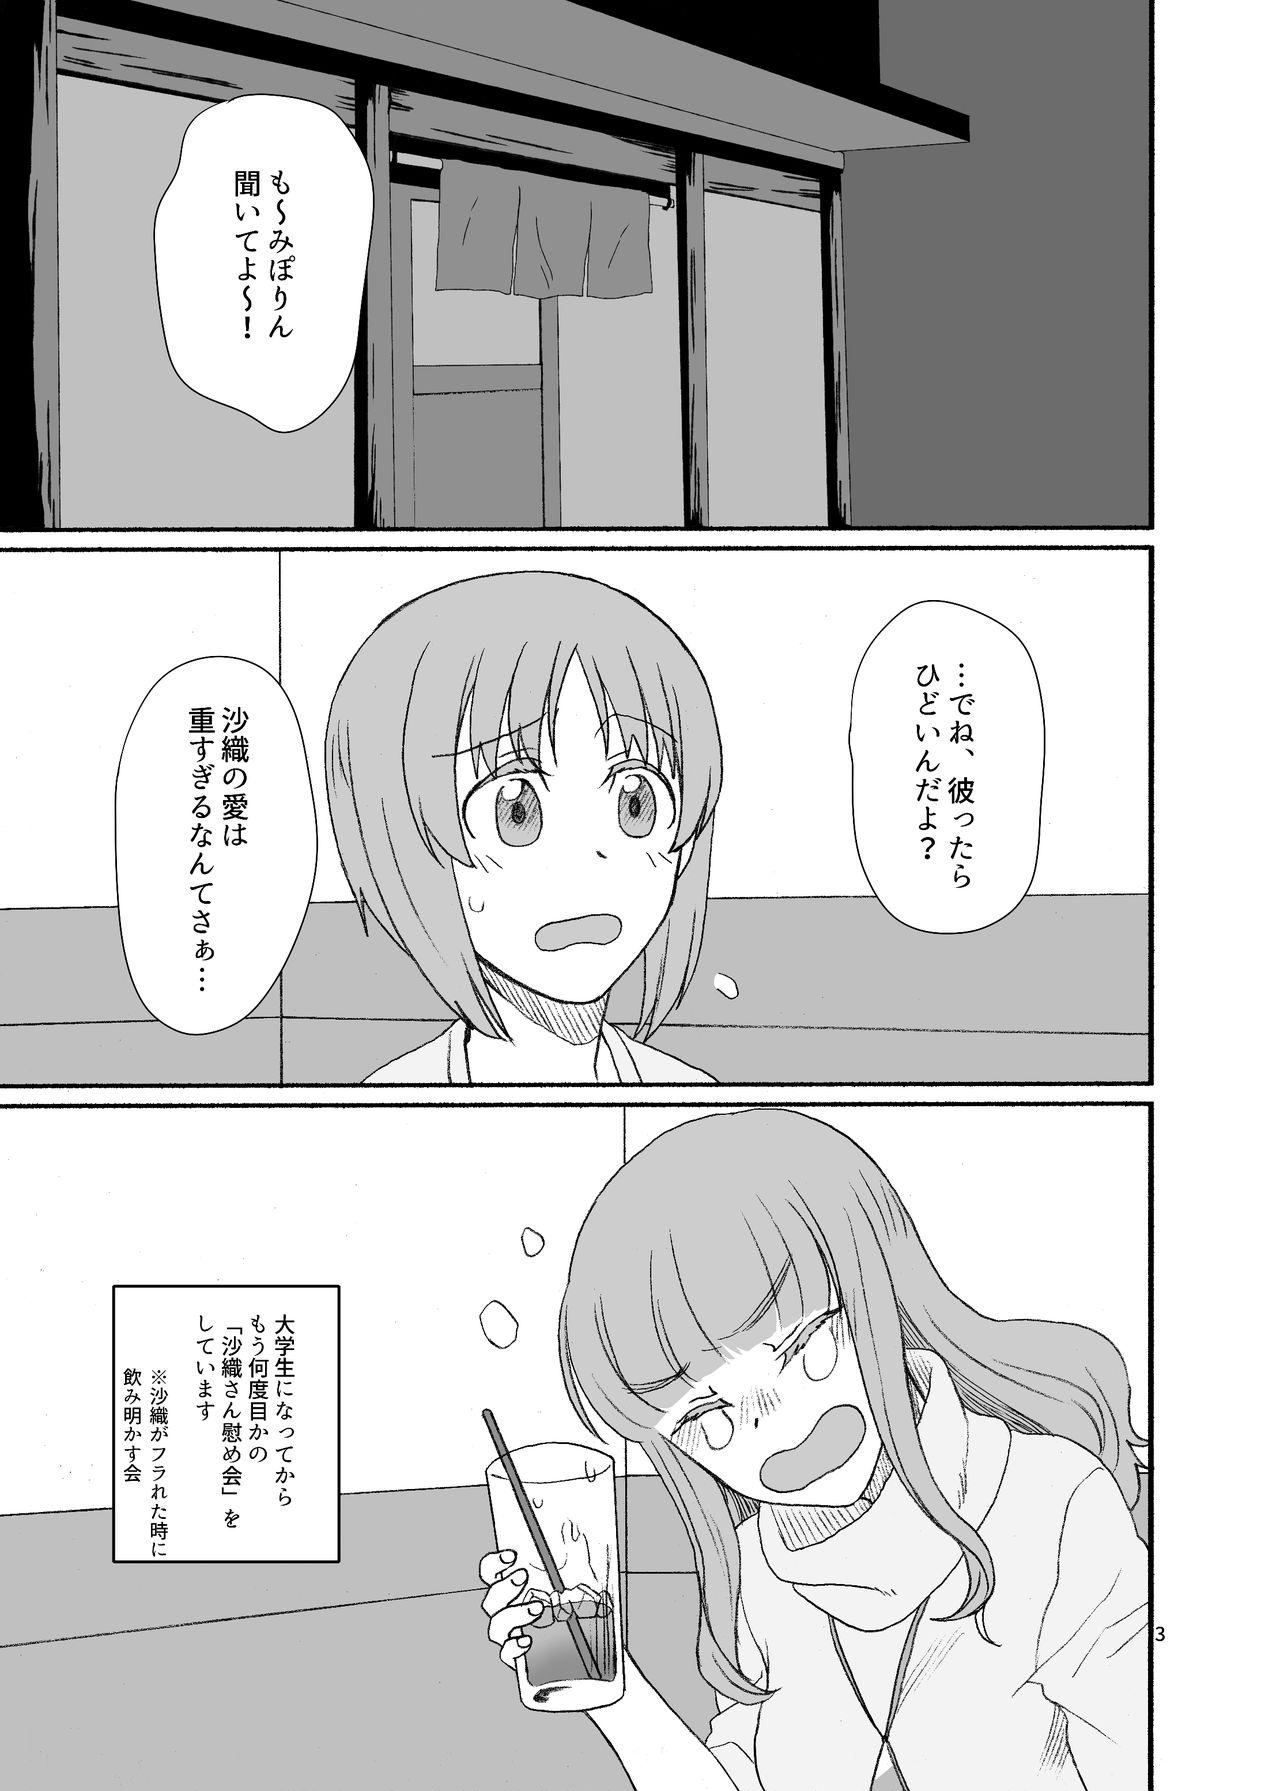 Ethnic Saori-san, Tsukiatte Kudasai! - Girls und panzer Shemale Sex - Page 2